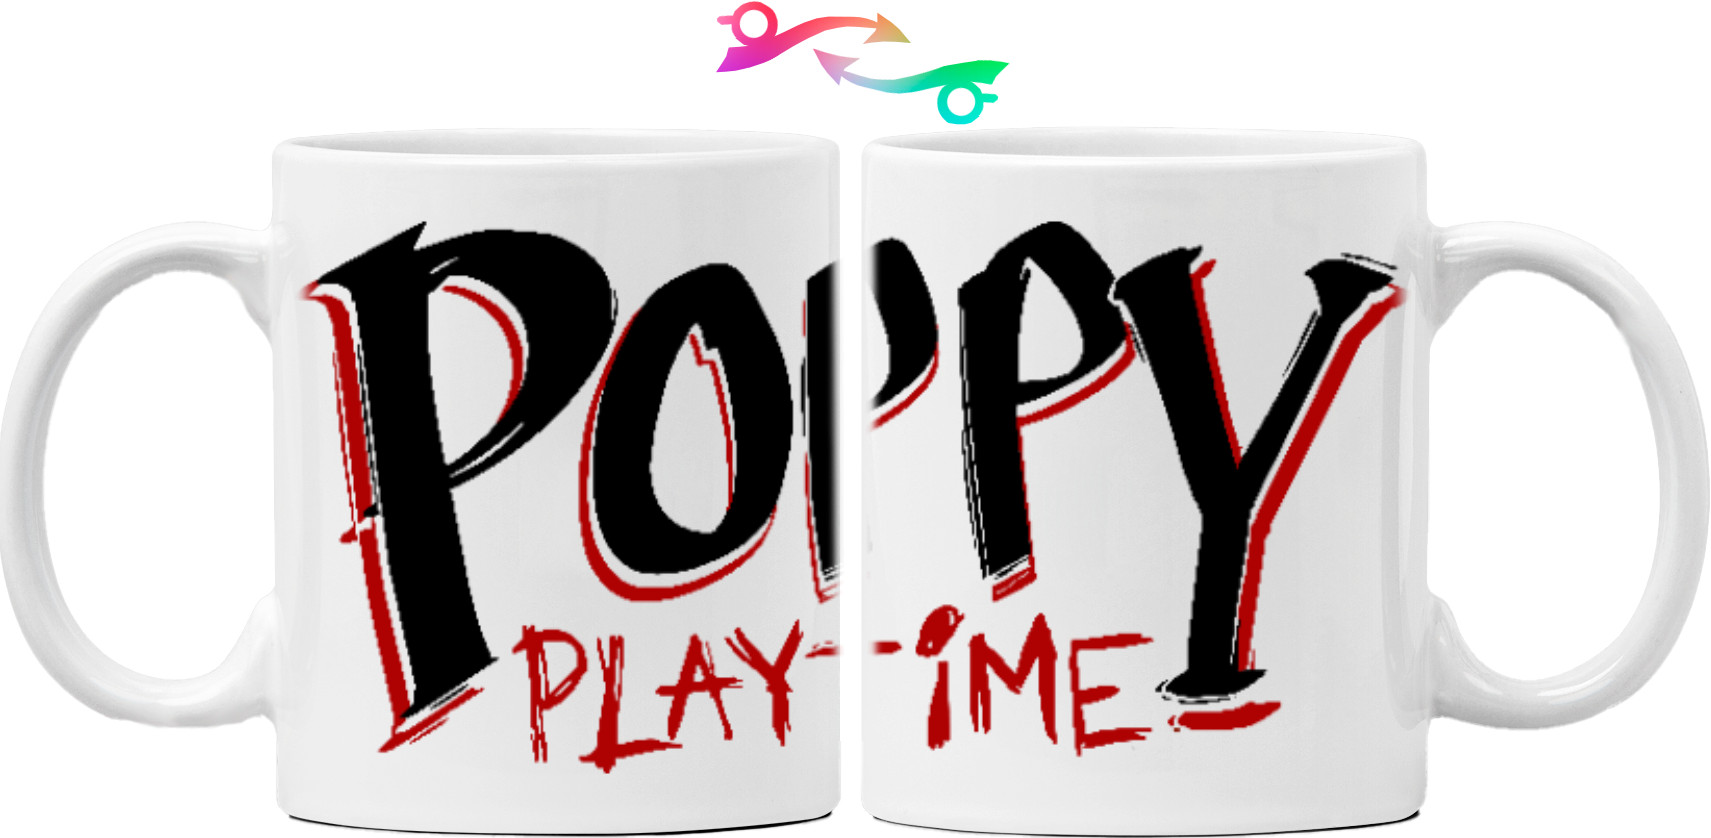 Poppy Playtime Logo